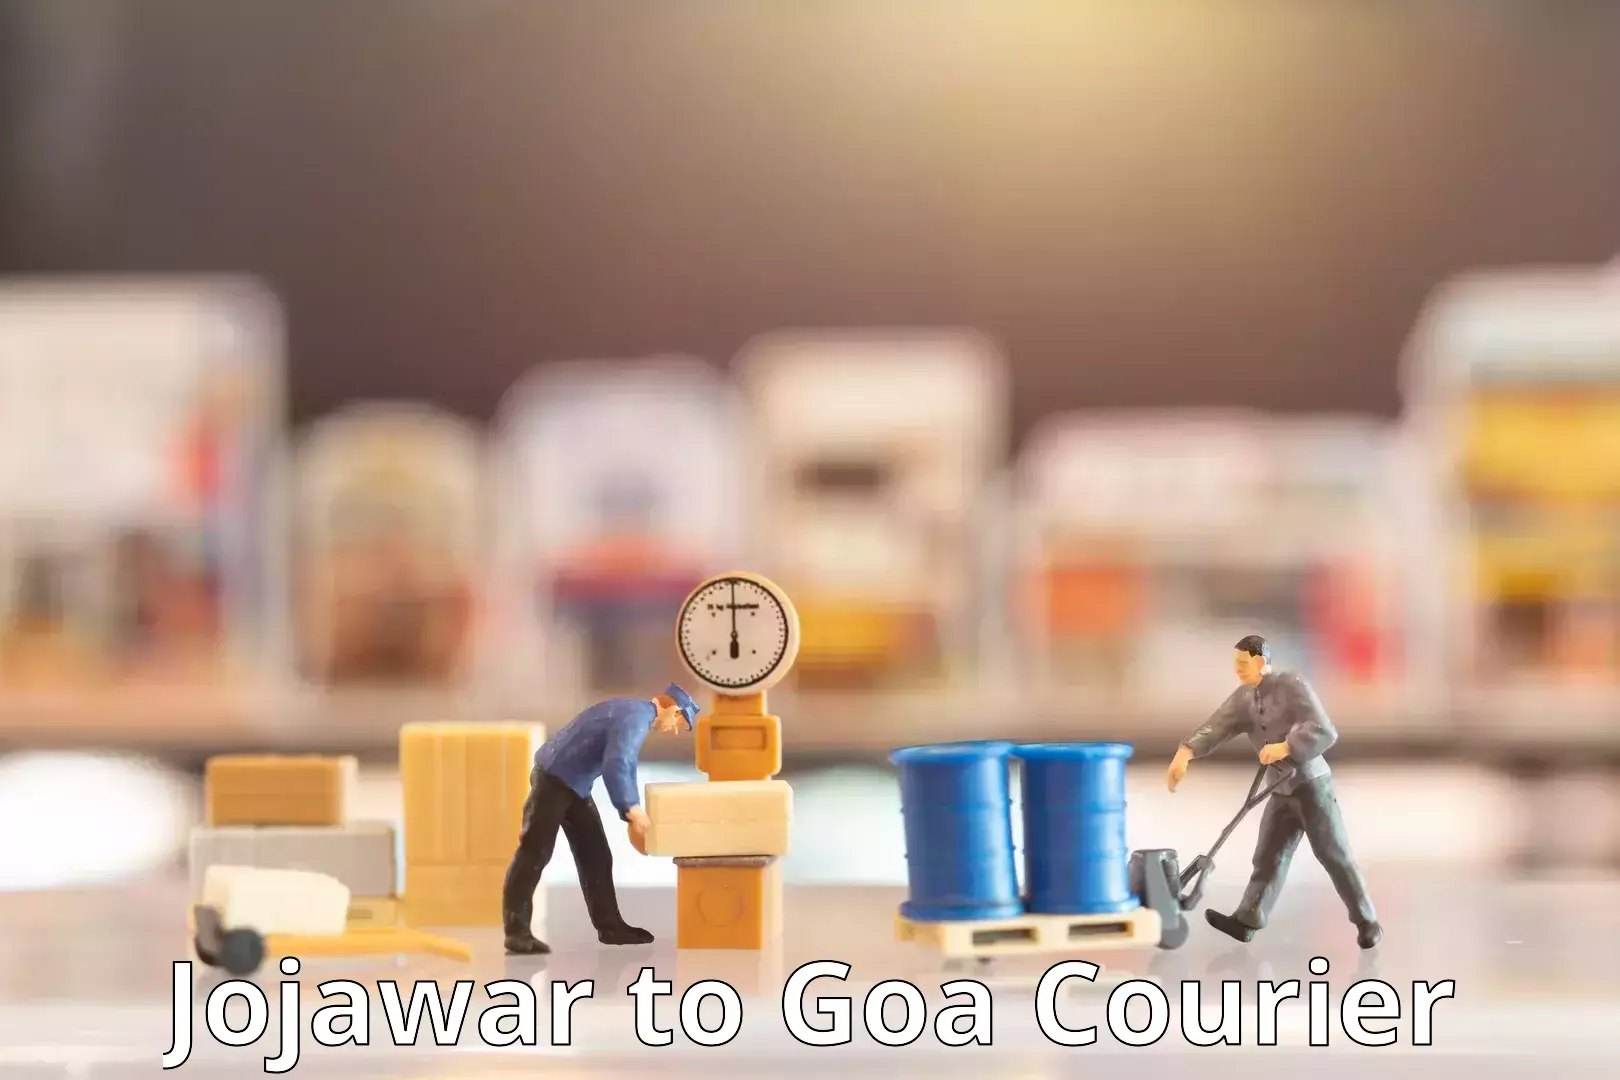 Global parcel delivery Jojawar to NIT Goa